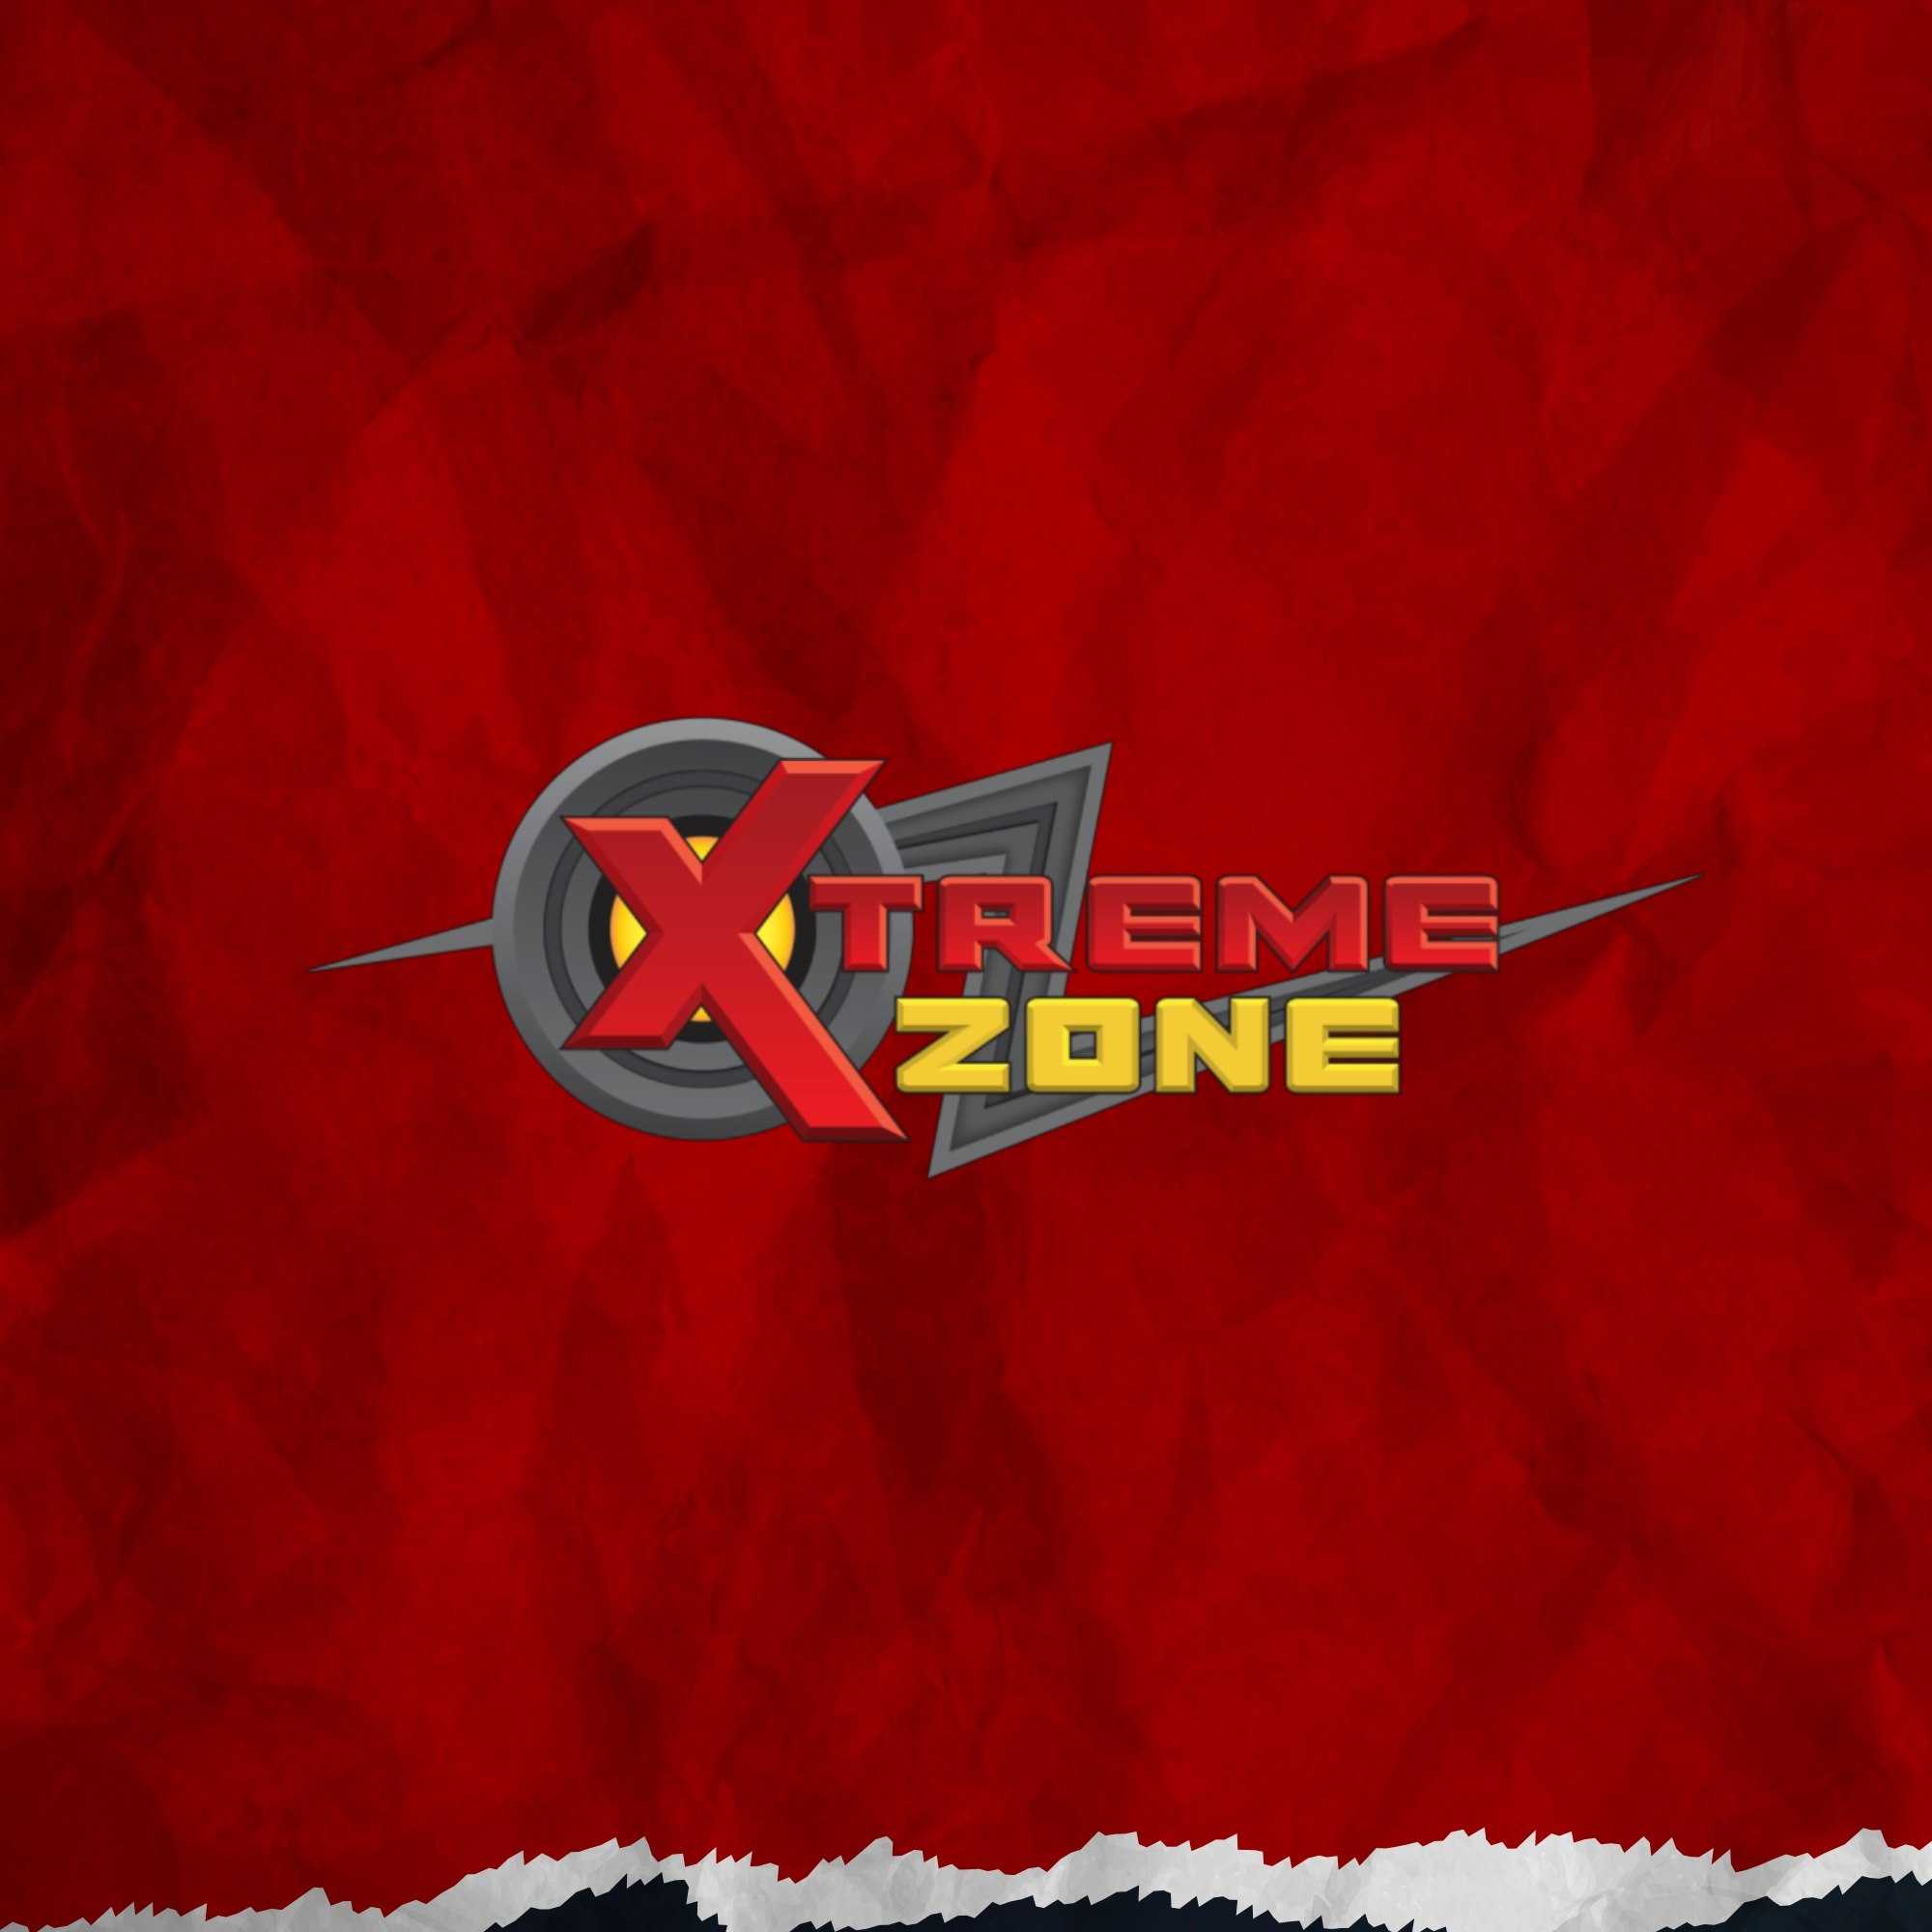 Xtreme Zone Egypt